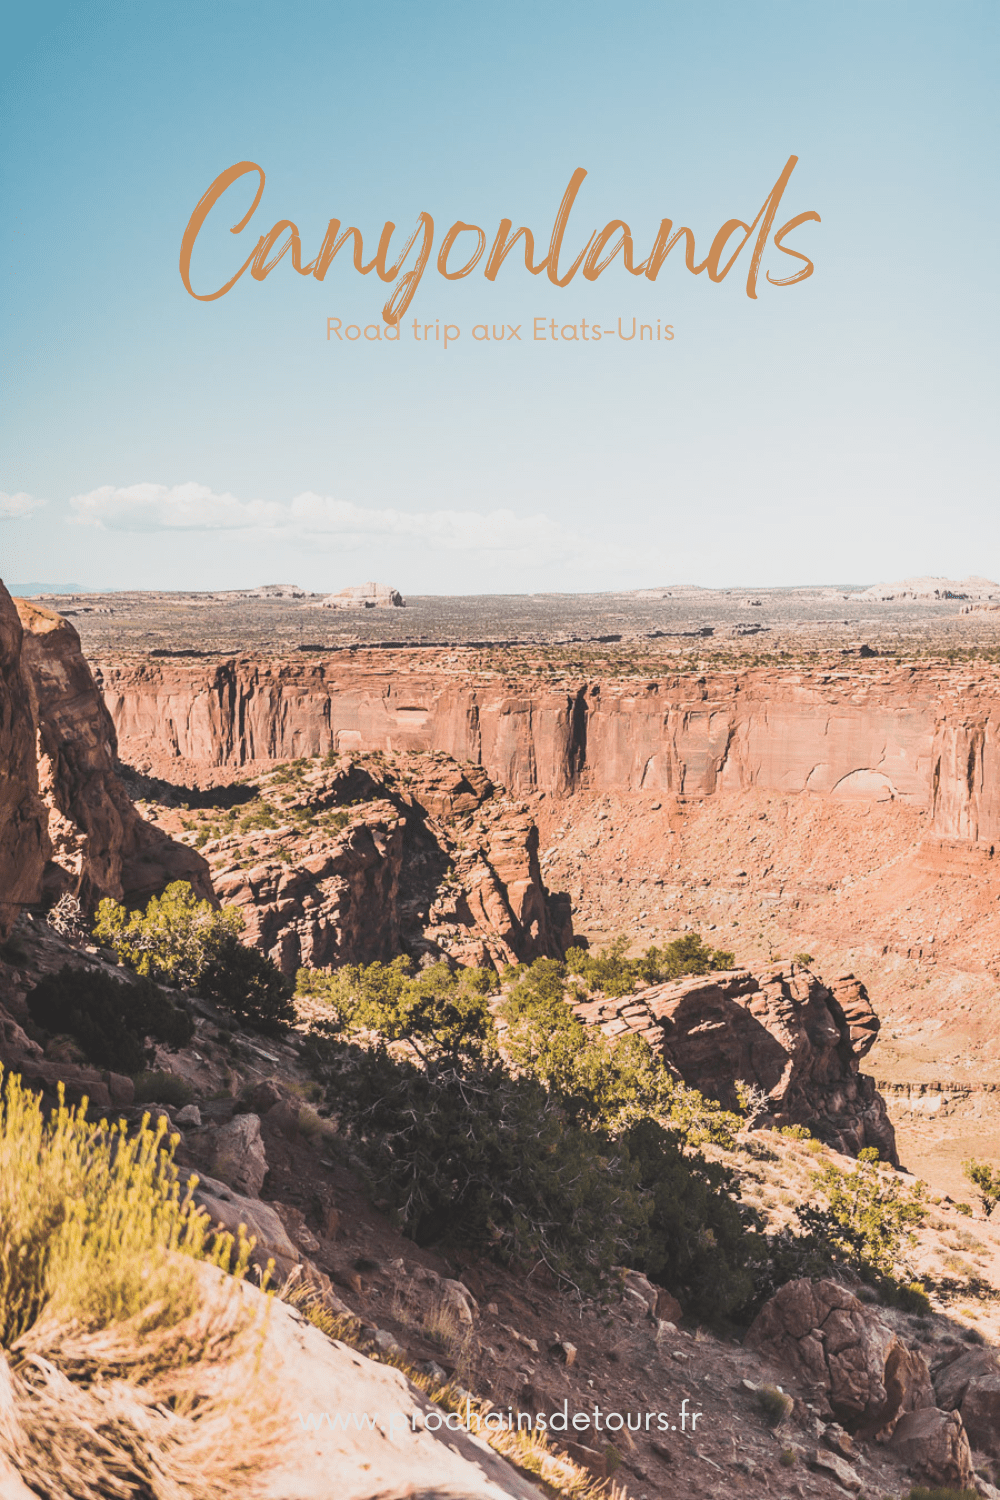 À l'extrémité ouest de l'Amérique se trouve le parc national de Canyonlands, un paysage à couper le souffle composé de canyons de roches rouges, de mesas et de buttes. Abritant un certain nombre de canyons vierges, ce parc offre aux voyageurs l'occasion de découvrir le Far West dans toute sa beauté et son aventure. Rejoignez-nous pour un road trip dans l'ouest américain inoubliable et explorez le meilleur des États-Unis. Découvrez notre guide sur notre voyage à Canyonlands National Park.